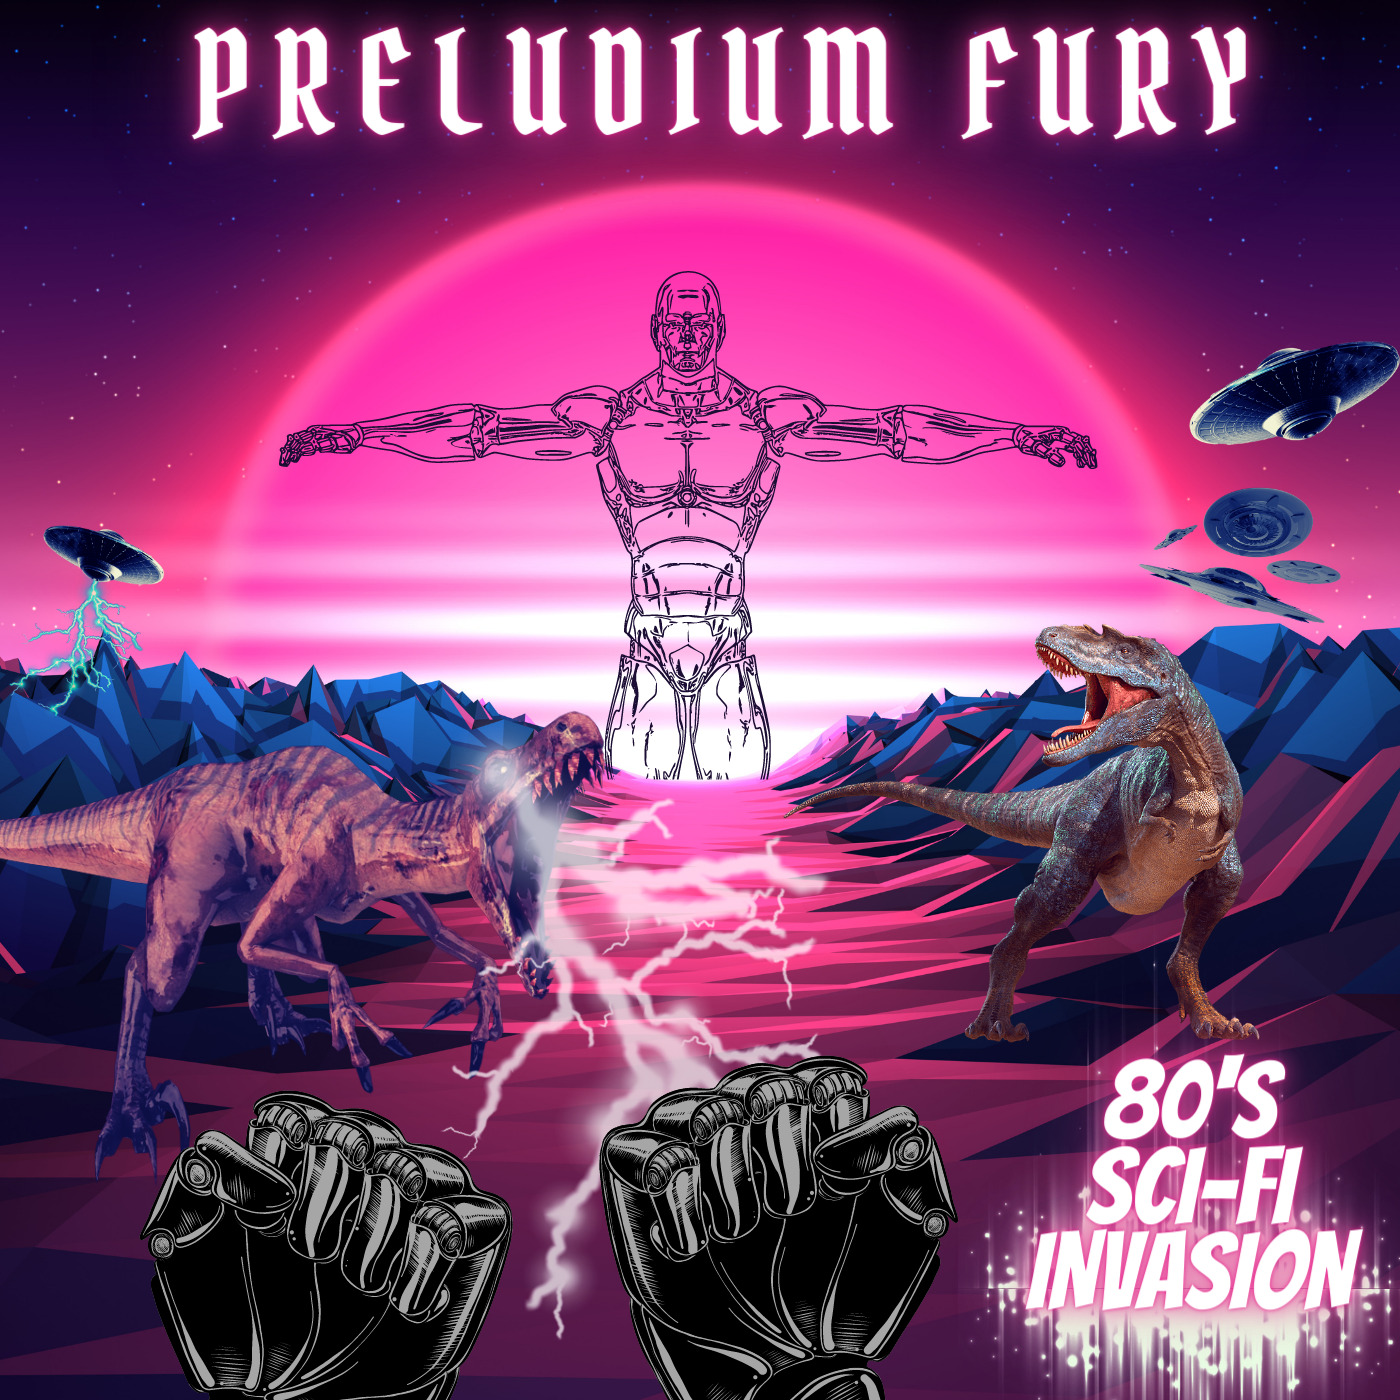 Preludium Fury